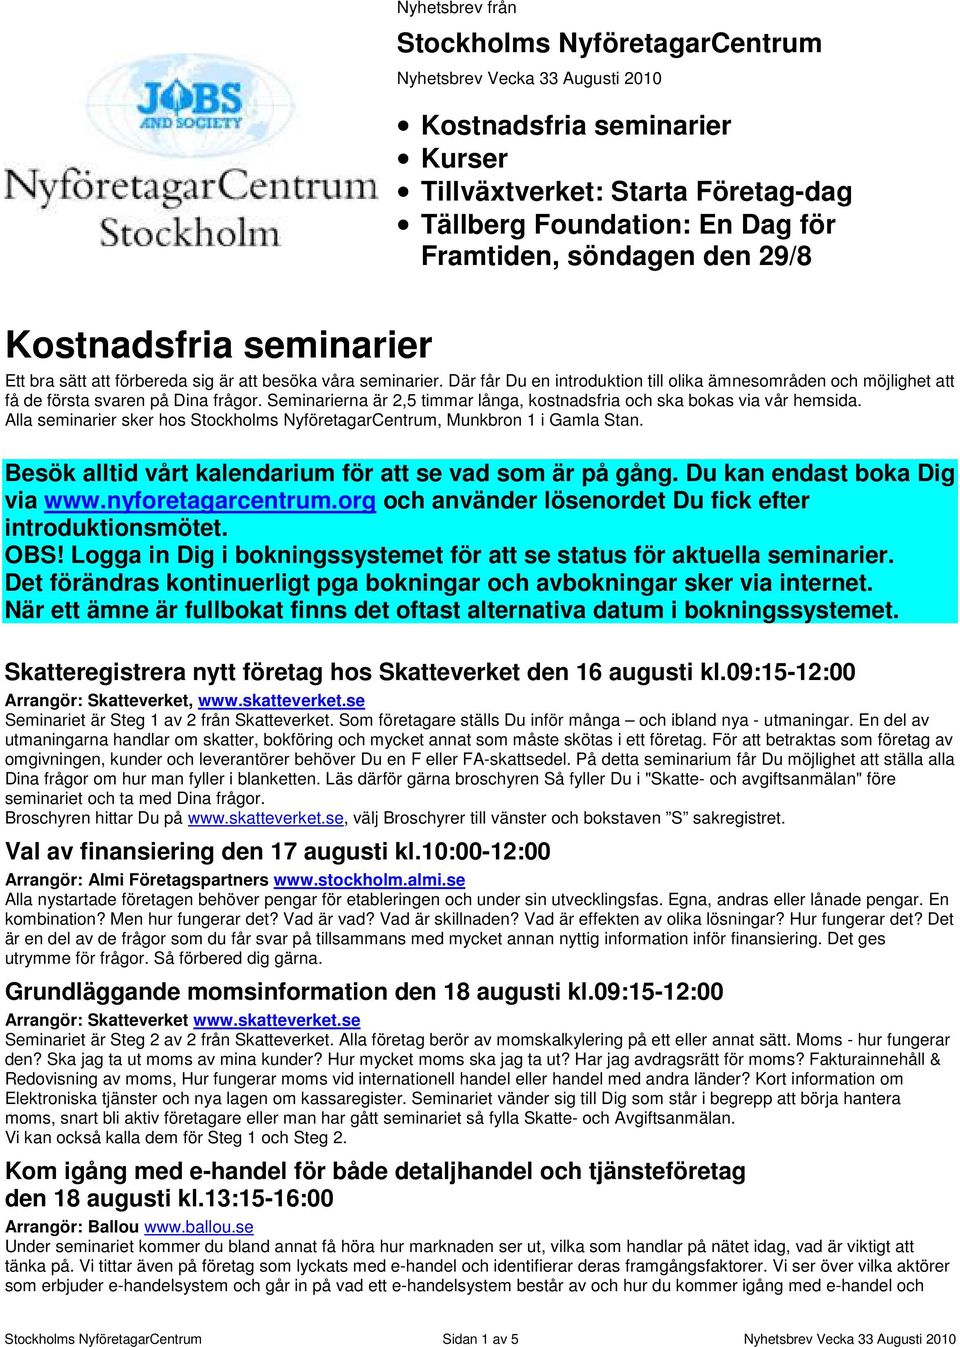 Seminarierna är 2,5 timmar långa, kostnadsfria och ska bokas via vår hemsida. Alla seminarier sker hos Stockholms NyföretagarCentrum, Munkbron 1 i Gamla Stan.